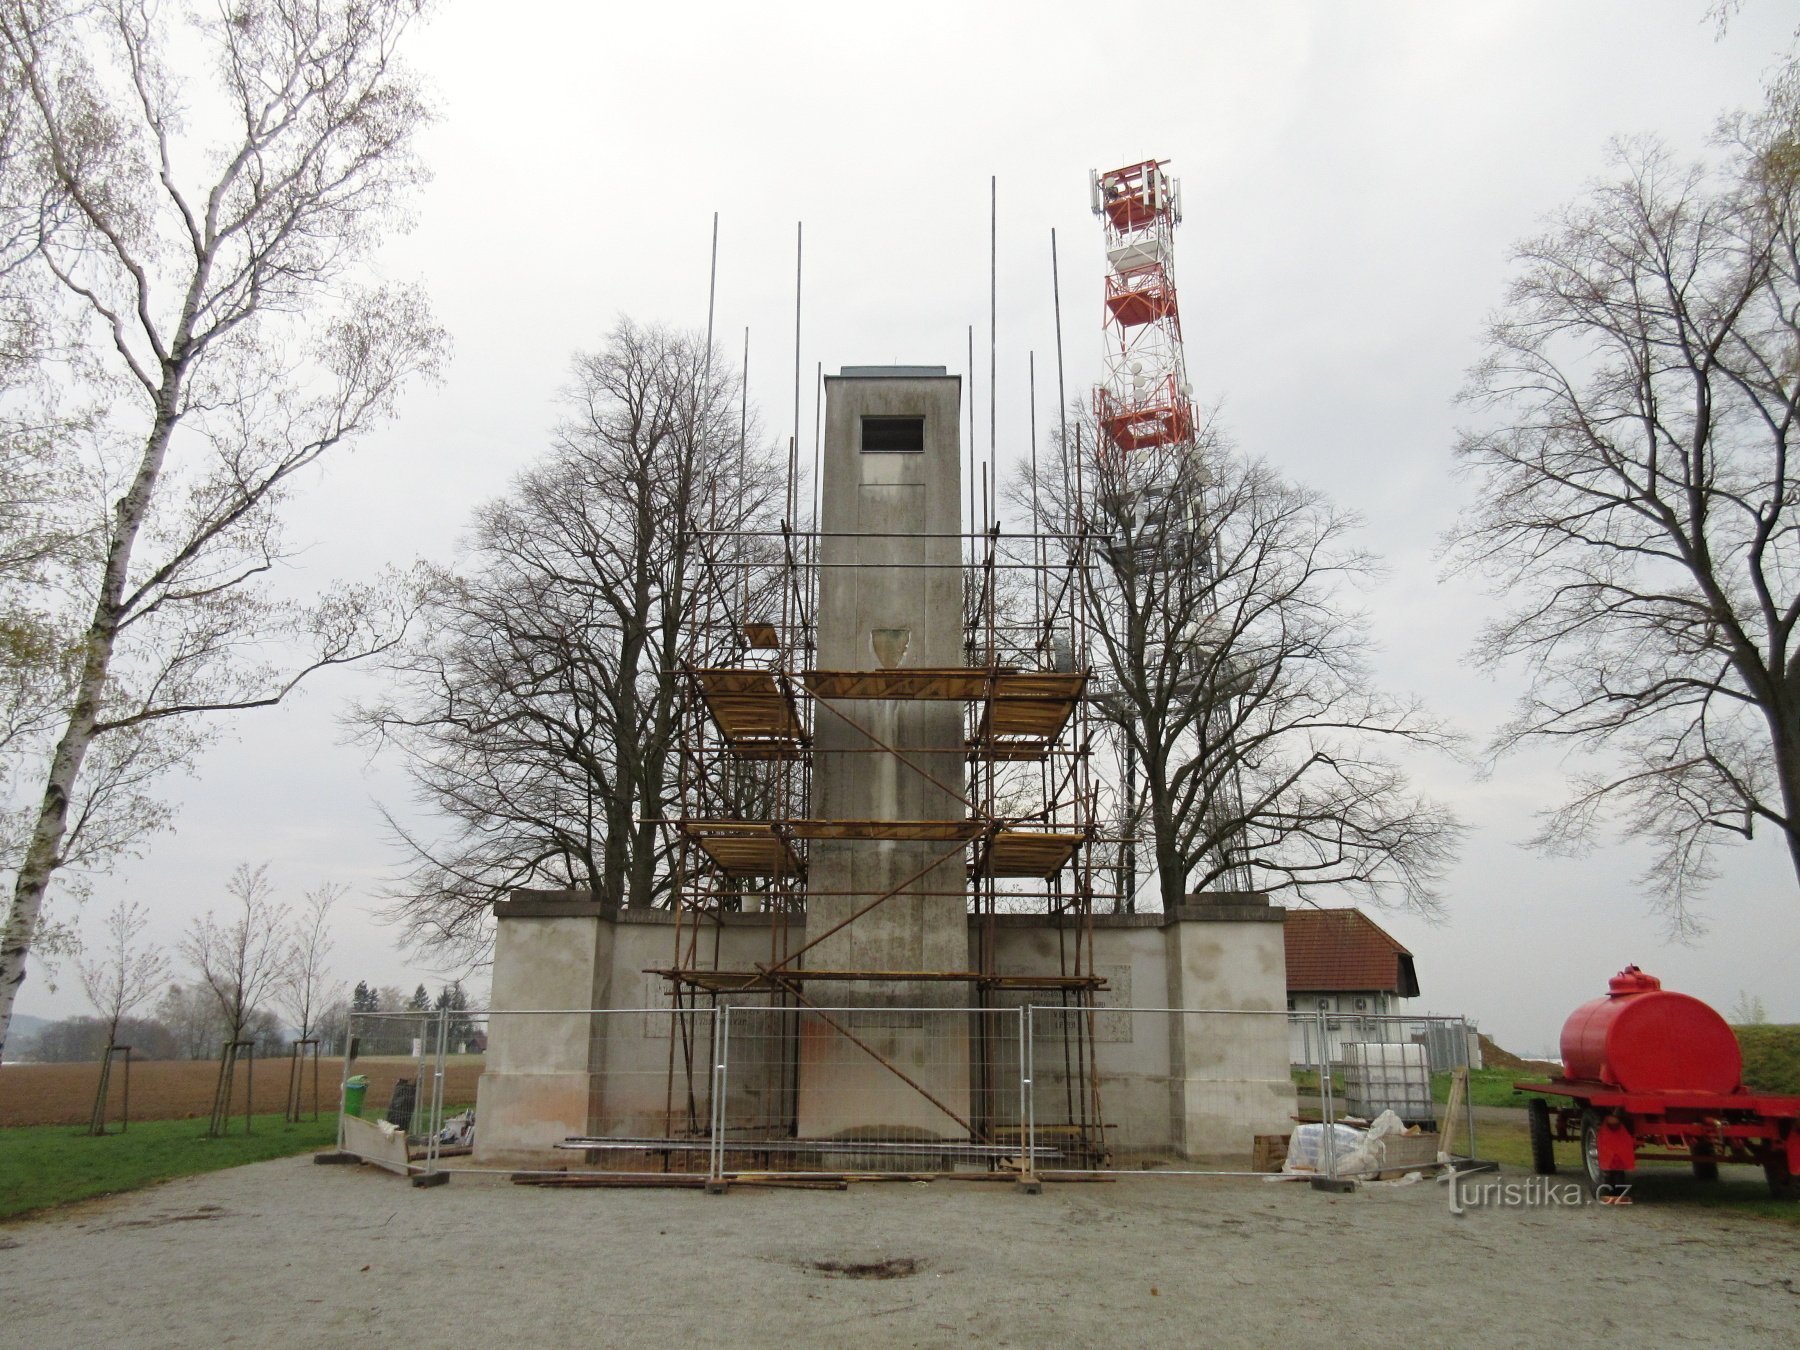 Đài tưởng niệm Mandava và tháp quan sát gần Sulic